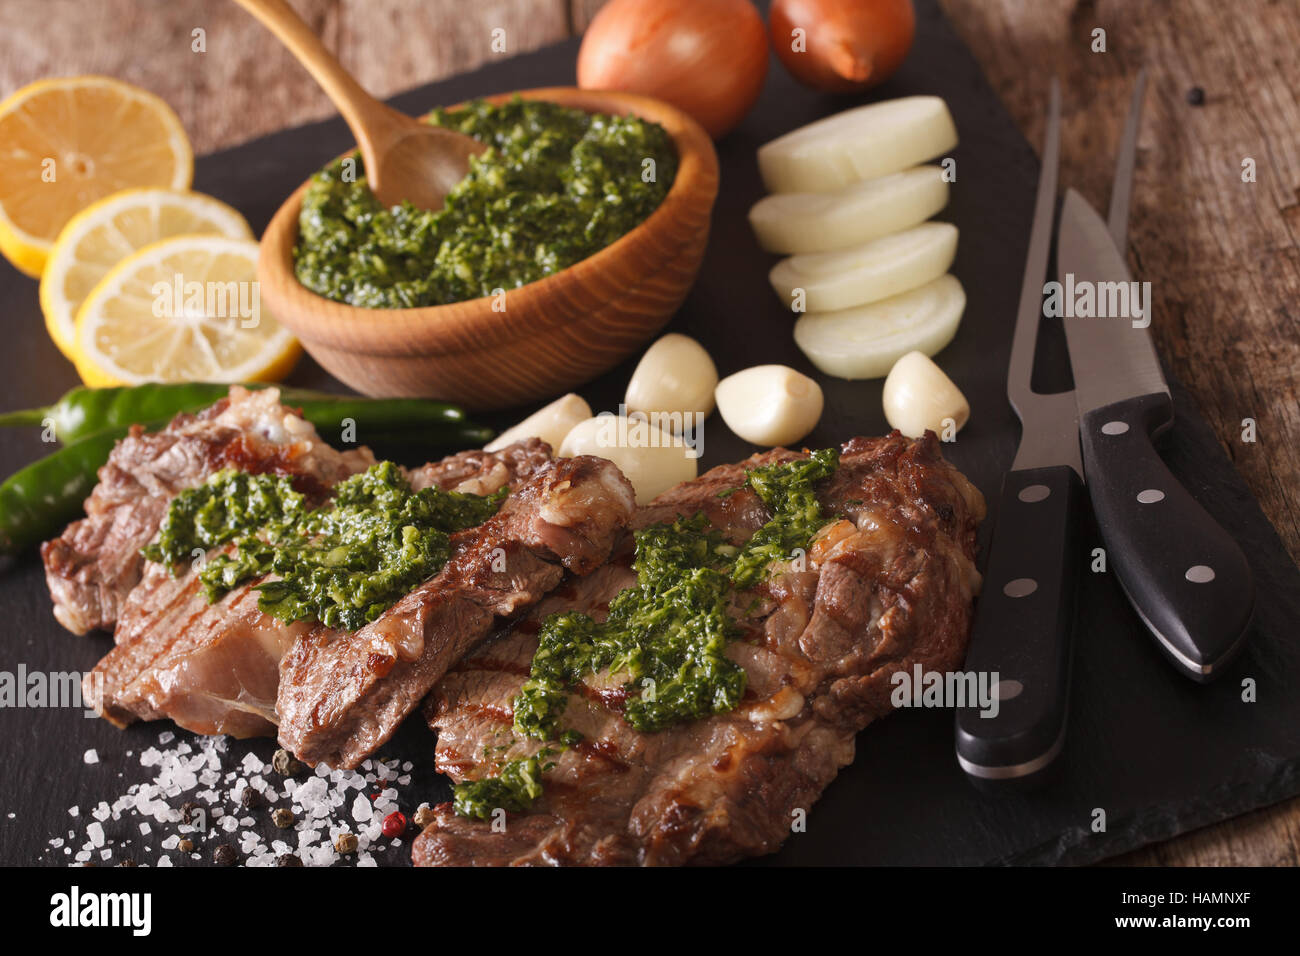 Délicieux steak de boeuf grillée avec sauce Chimichurri close-up sur la table horizontale. Banque D'Images